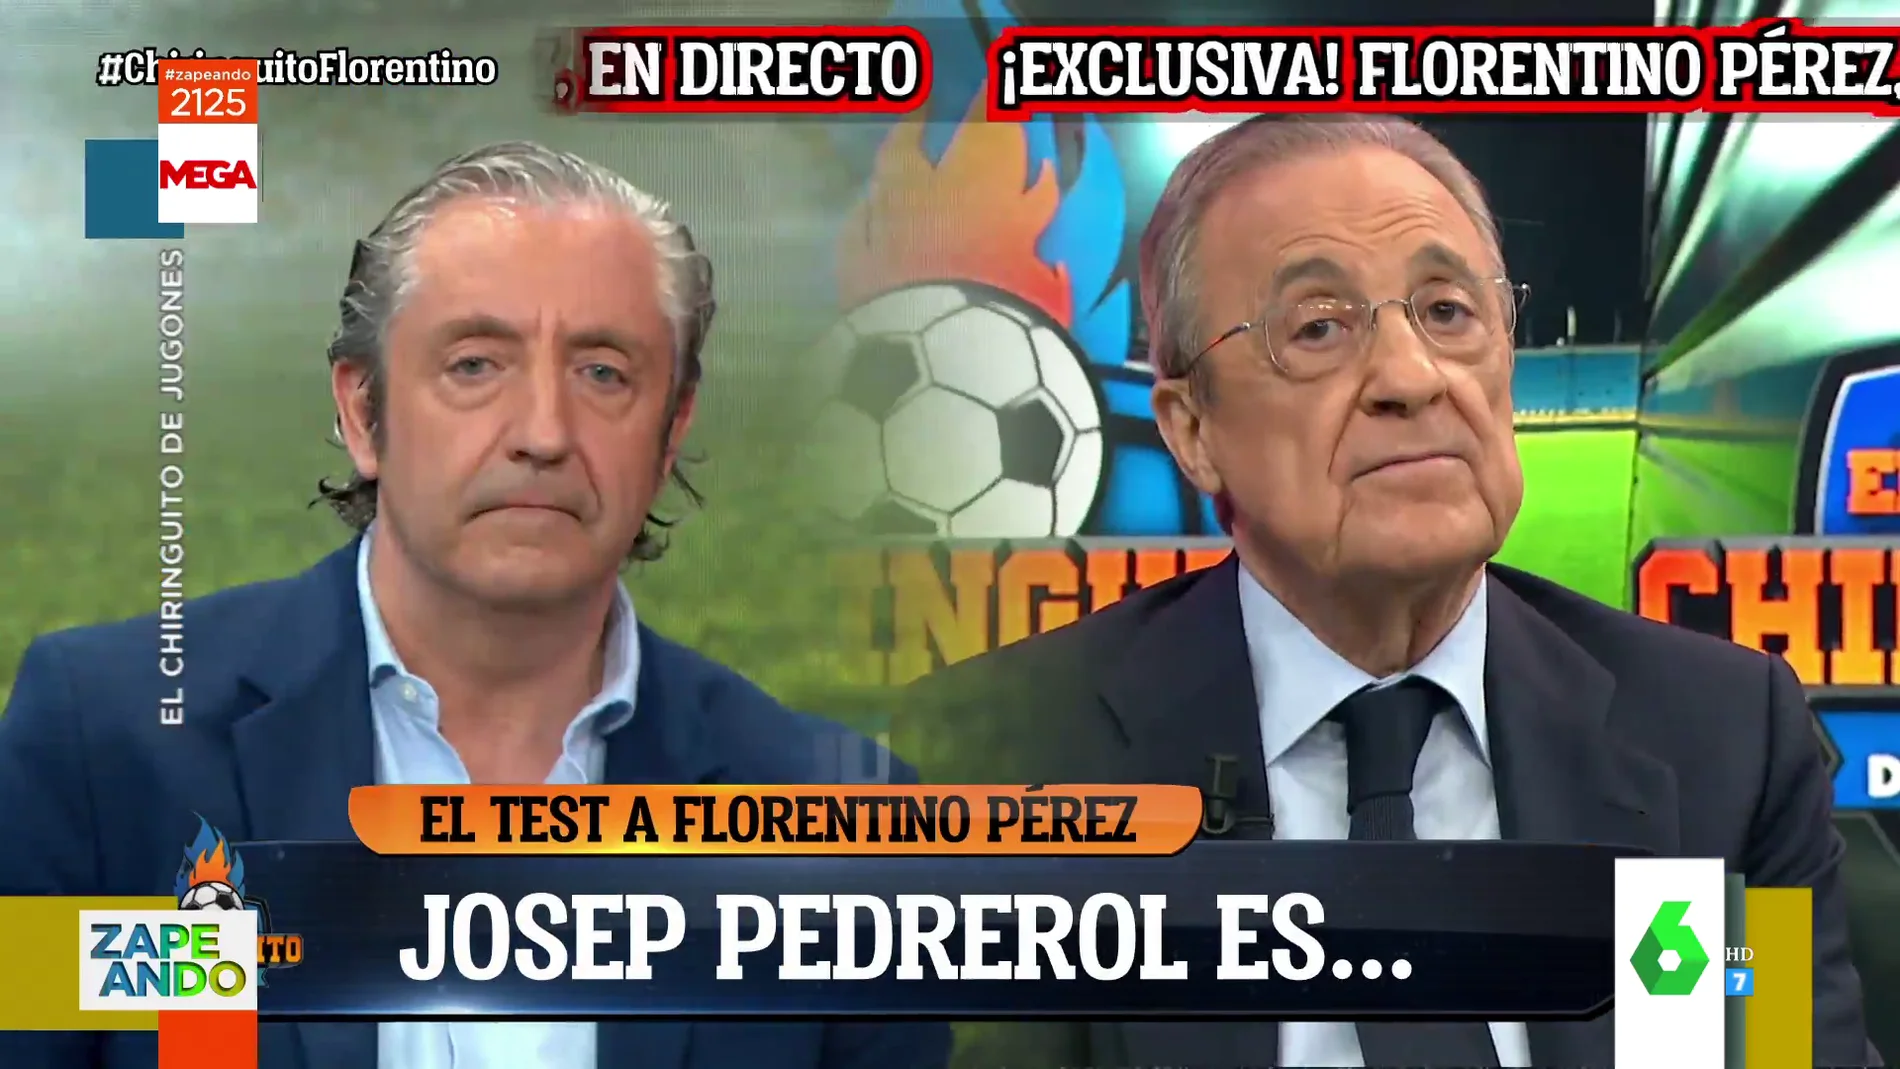 La reacción de Josep cuando Florentino Pérez le define esta palabra en pleno directo de El Chiringuito